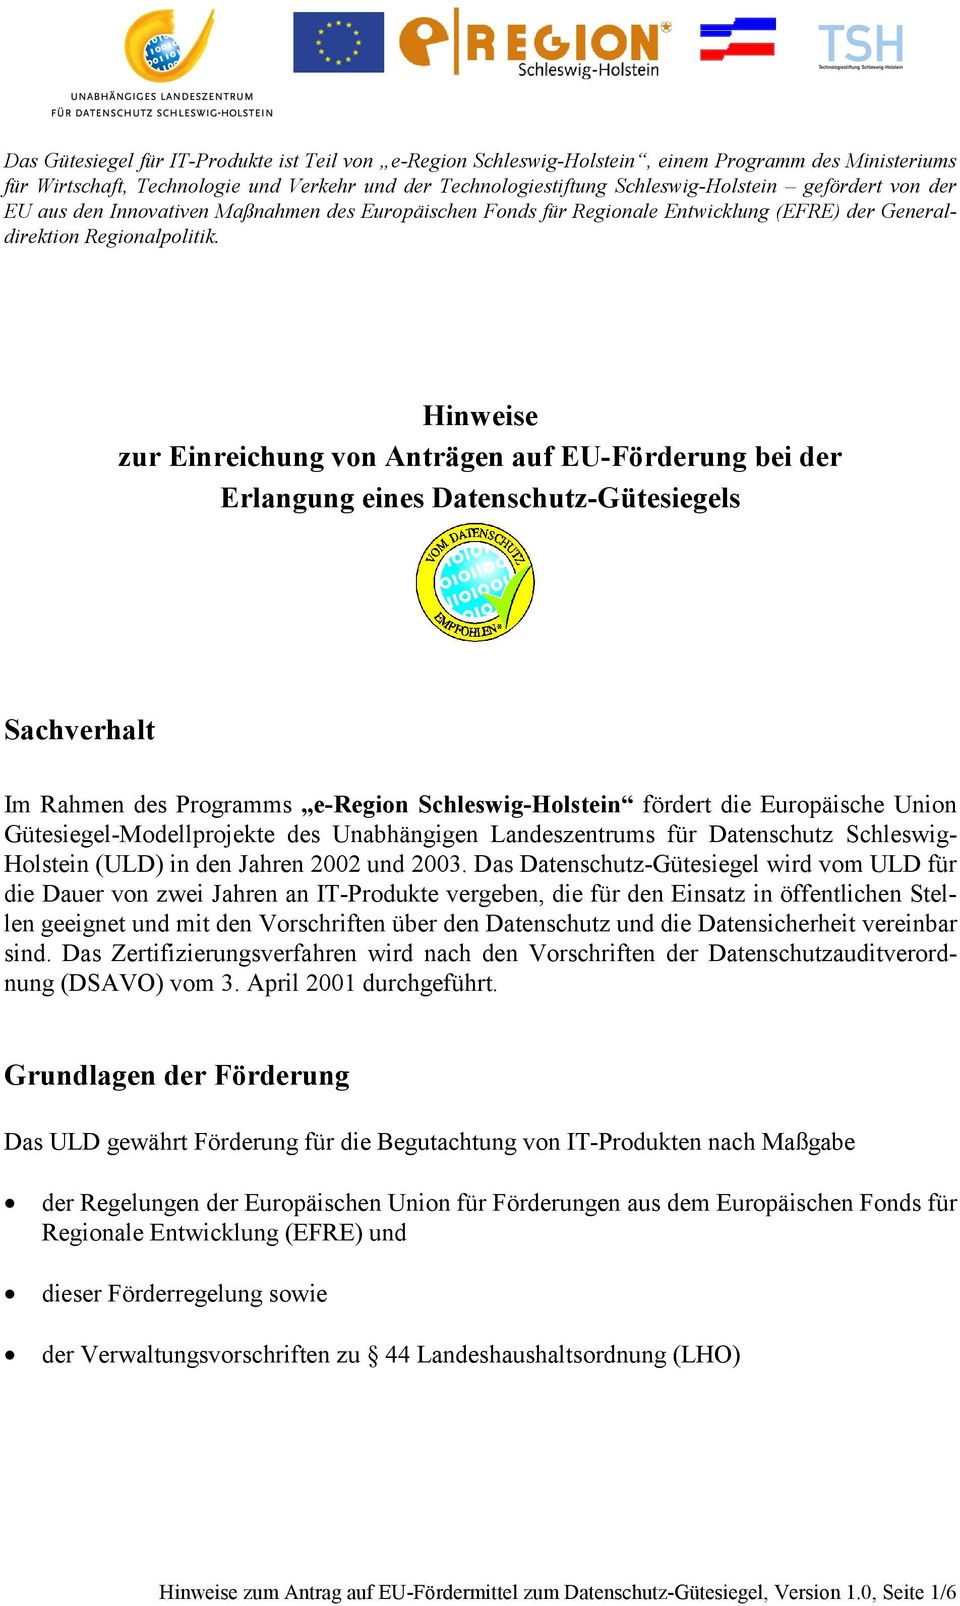 Hinweise zur Einreichung von Anträgen auf EU-Förderung bei der Erlangung eines Datenschutz-Gütesiegels Sachverhalt Im Rahmen des Programms e-region Schleswig-Holstein fördert die Europäische Union